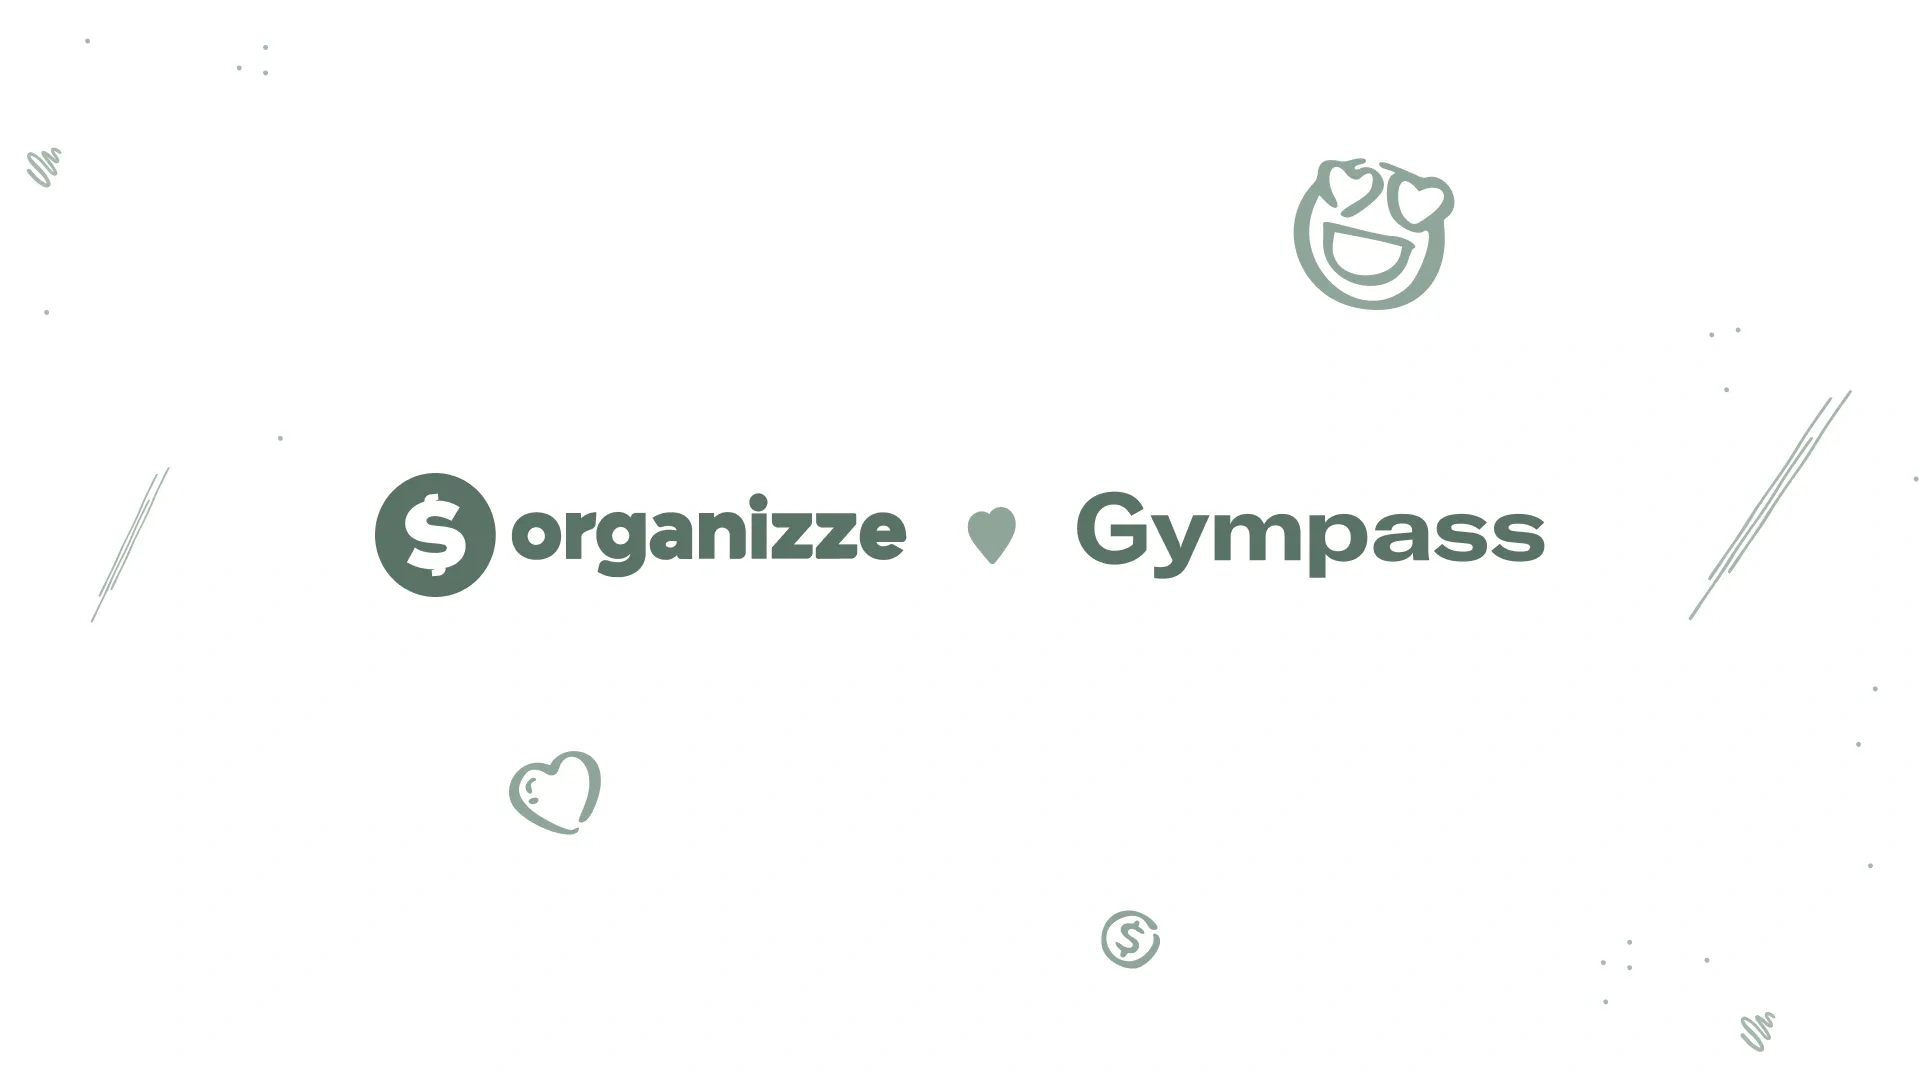 gympass organizze